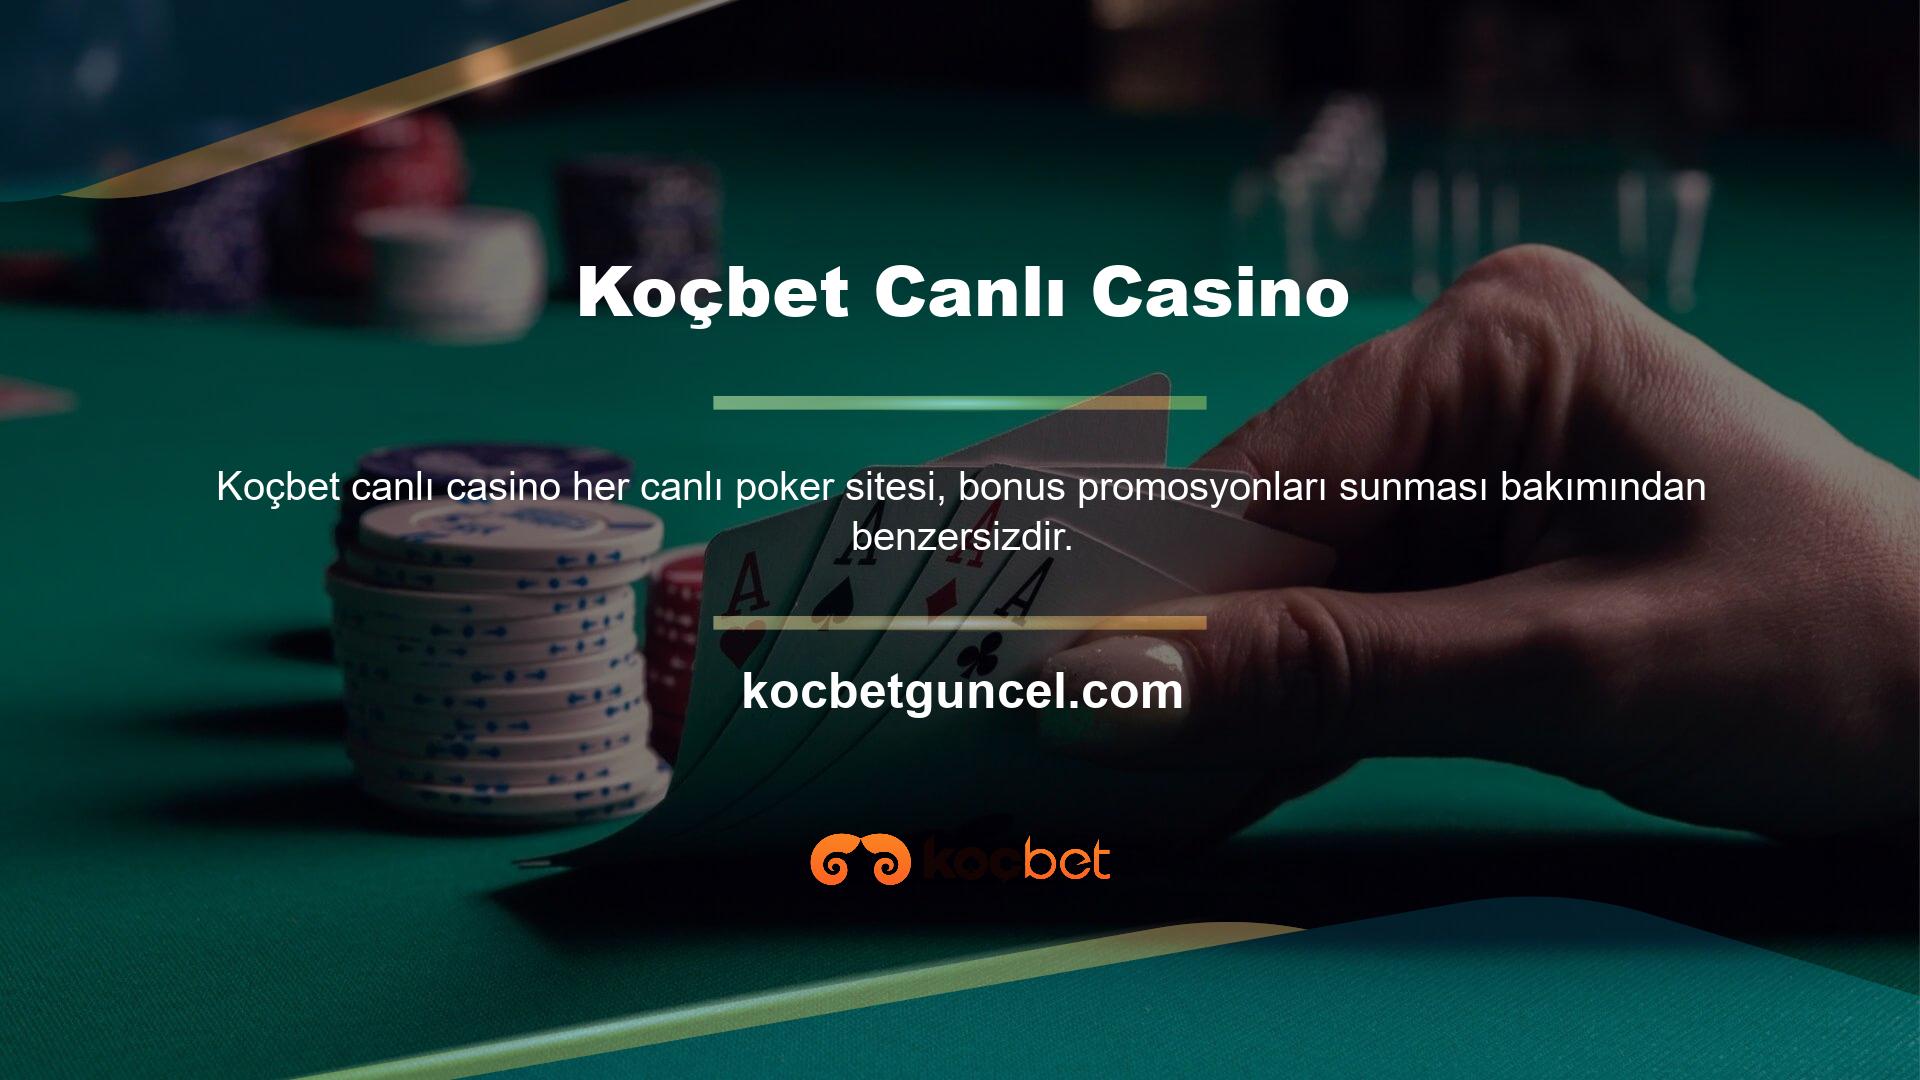 Çevrimiçi poker şirketleri de bonuslar sağlıyor